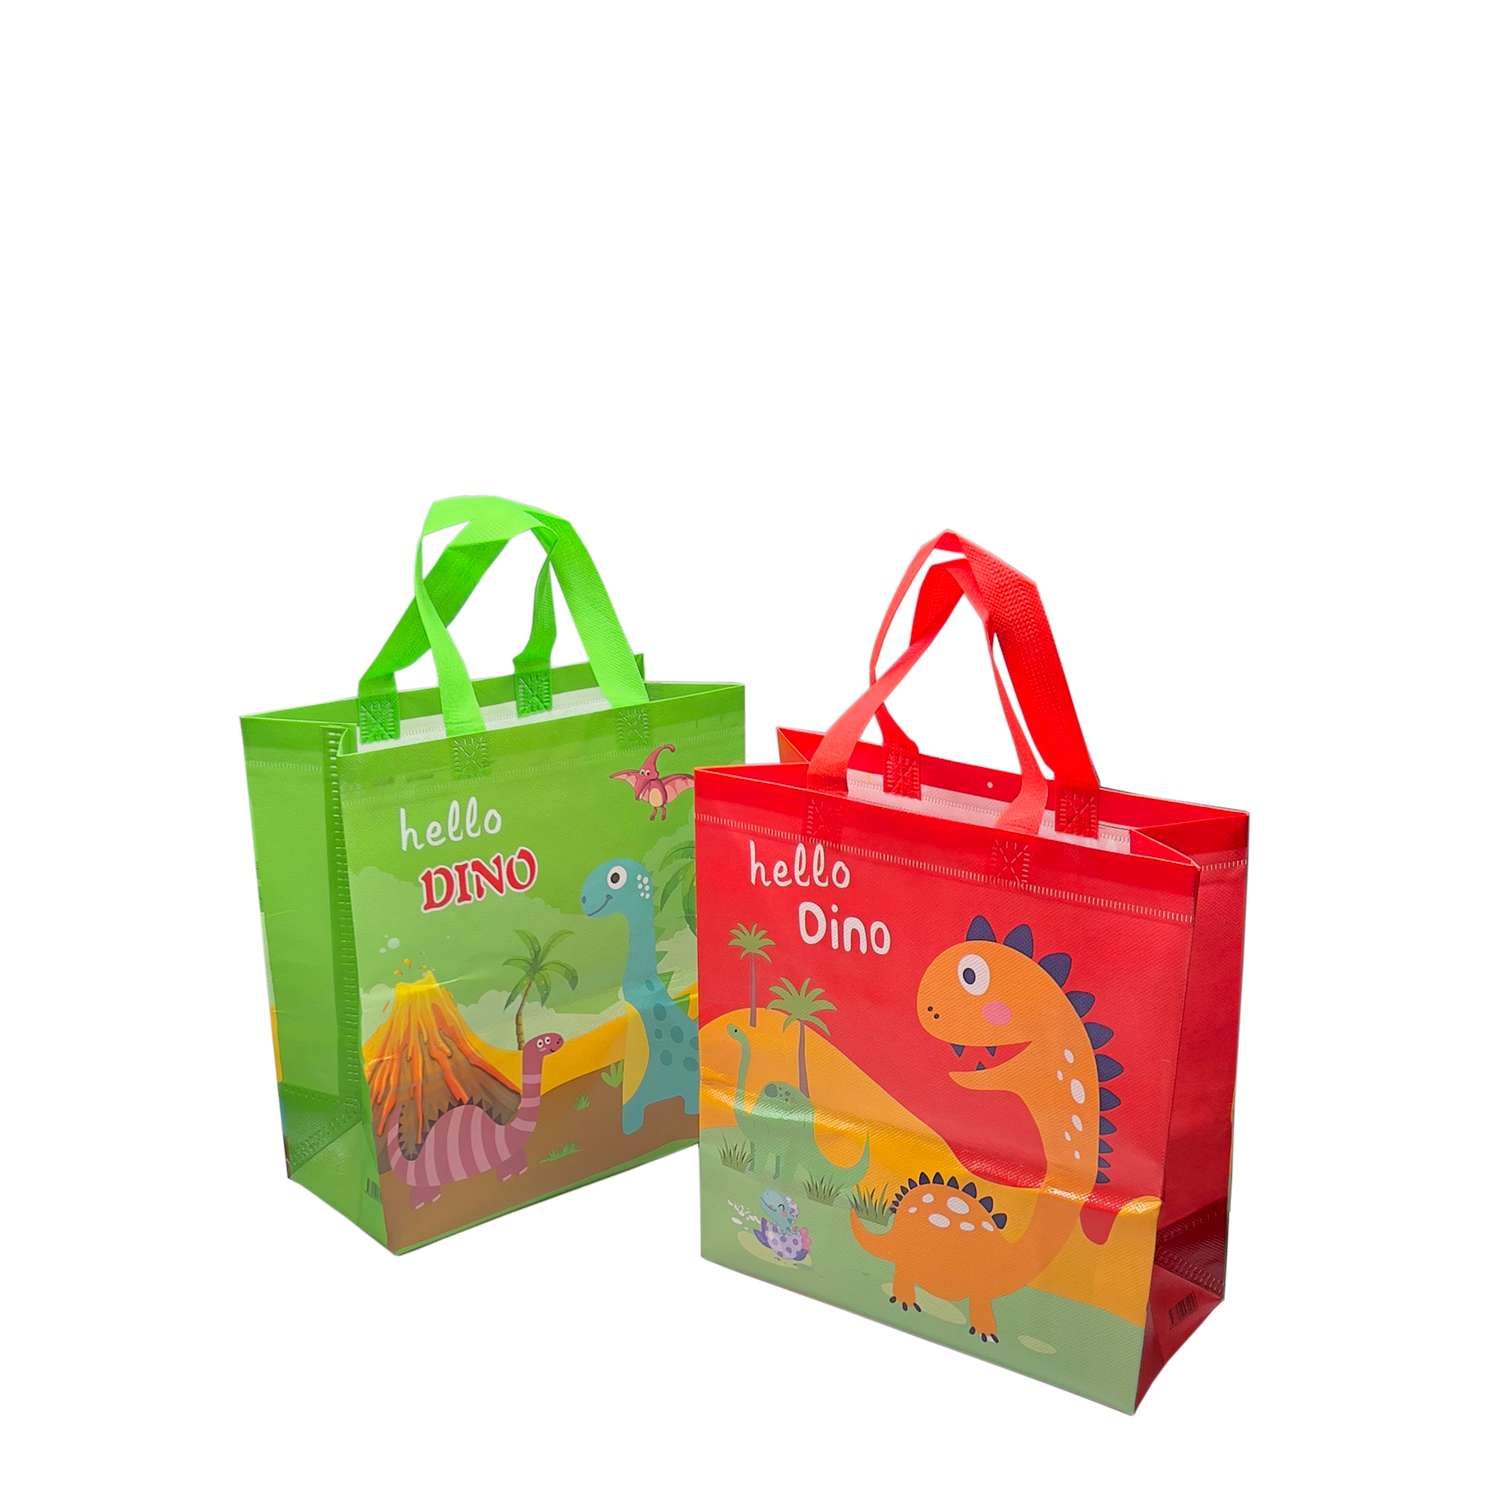 Подарочные пакеты для детей LATS 4 штуки День Рождения + динозавры - фото 14